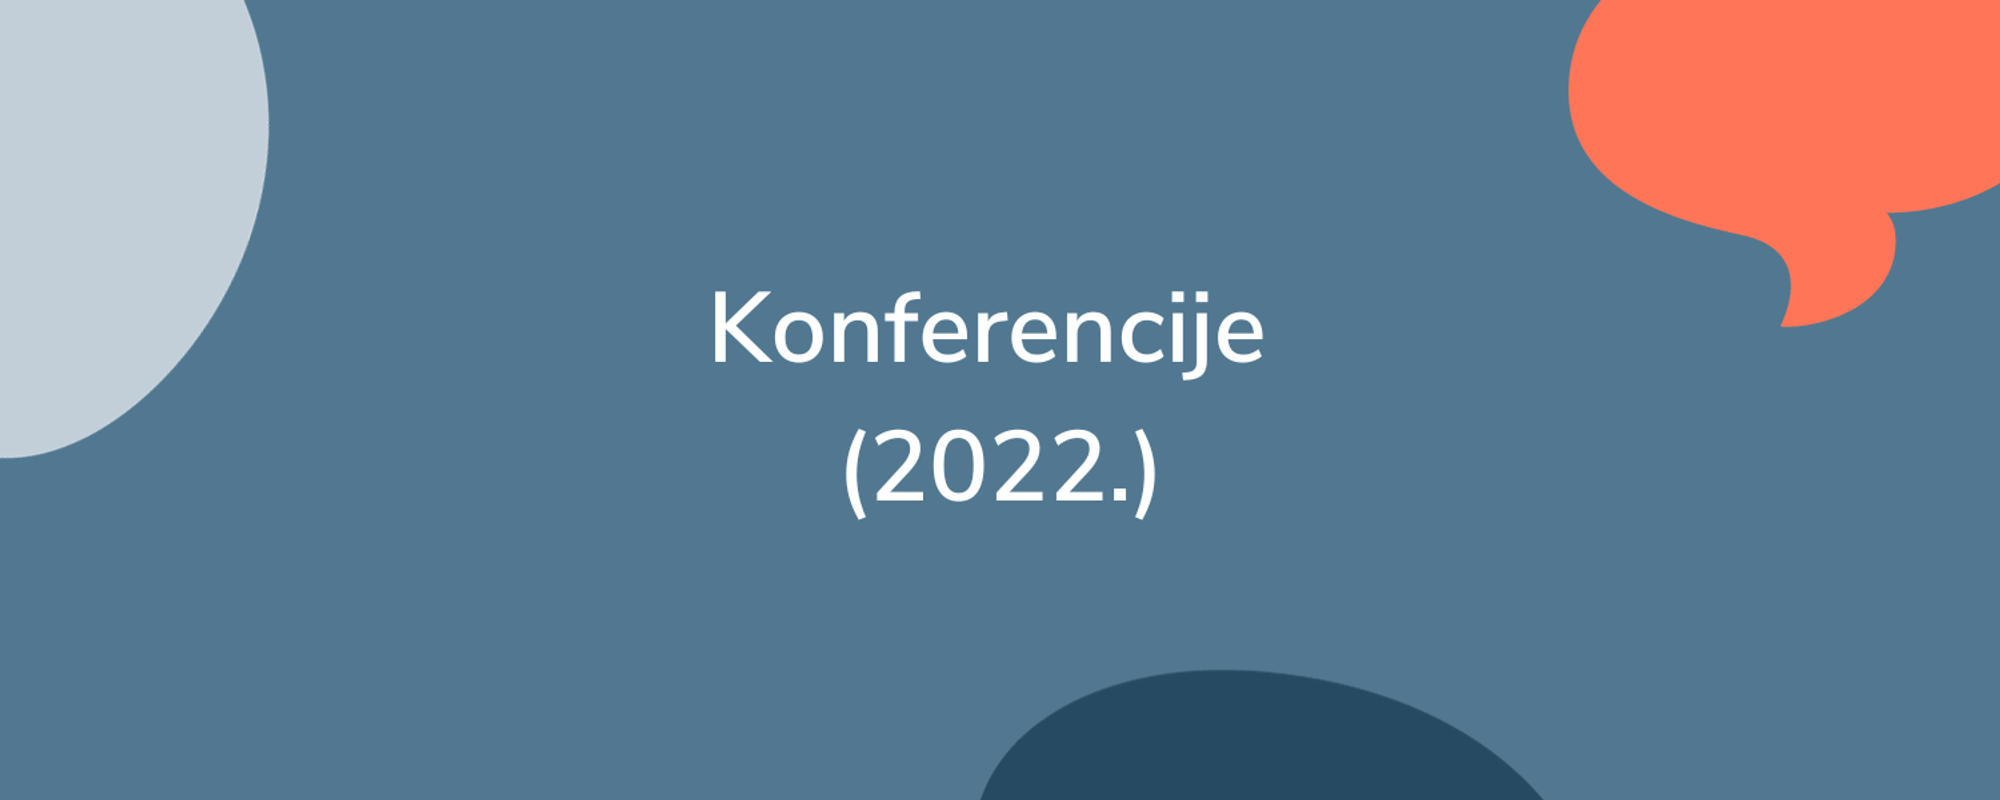 Popis važnih konferencija i poslovnih događanja u 2022. godini